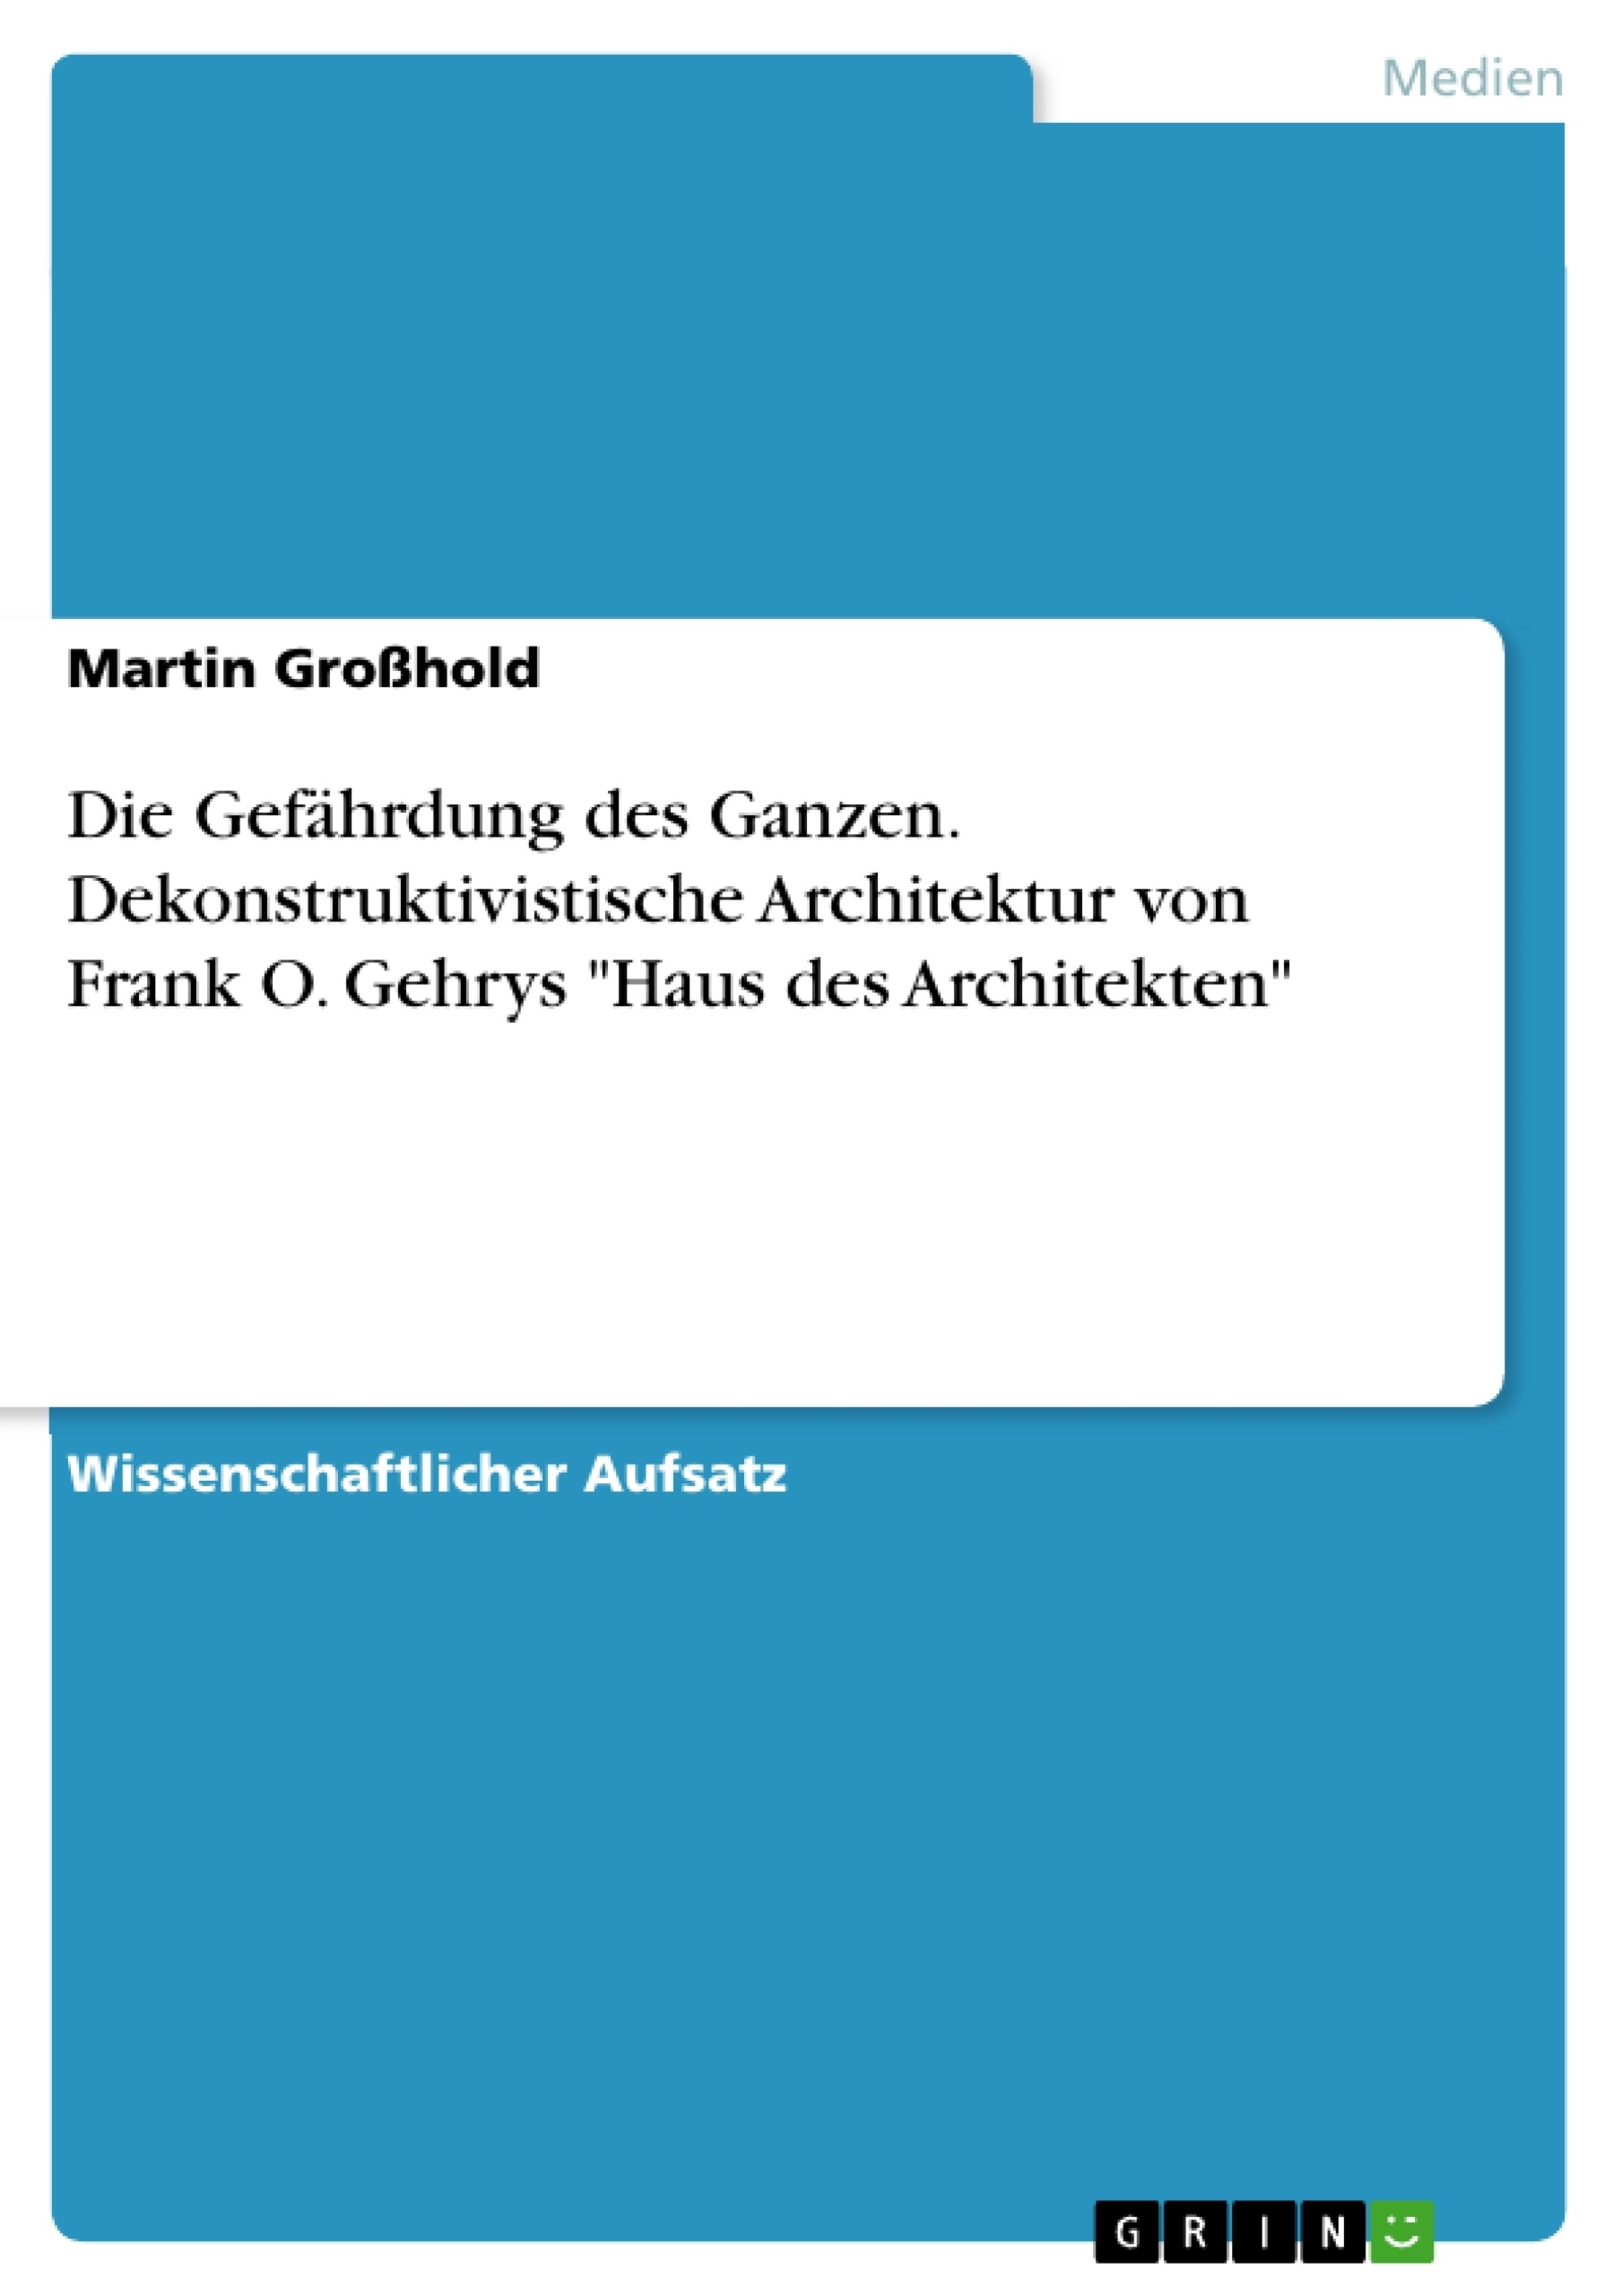 Title: Die Gefährdung des Ganzen. Dekonstruktivistische Architektur von Frank O. Gehrys "Haus des Architekten"